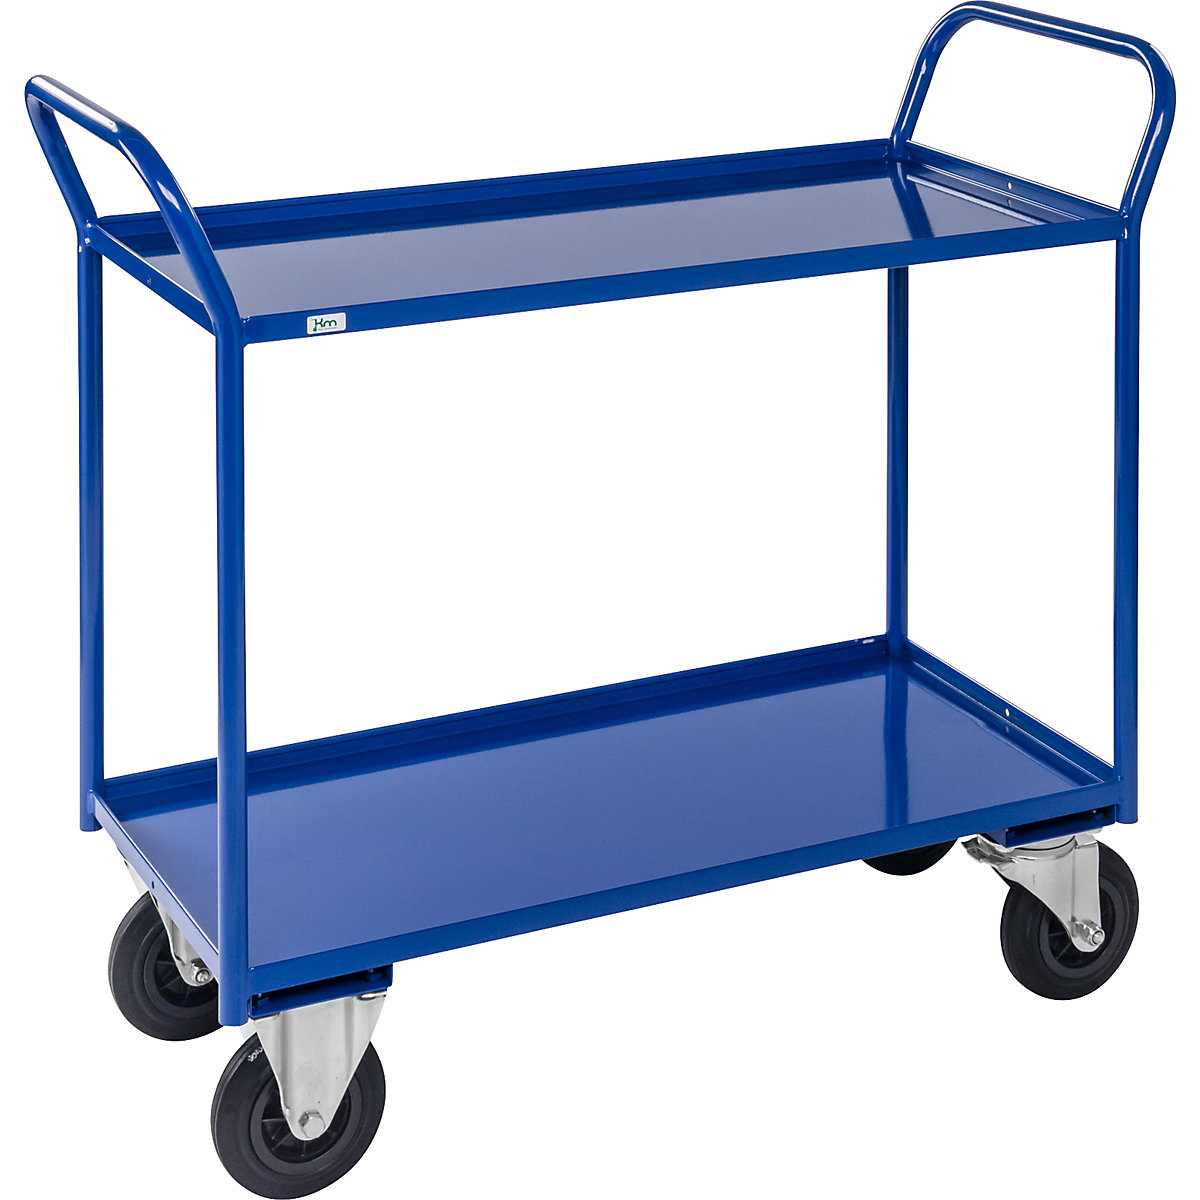 Stolový vozík KM41 – Kongamek, 2 poschodia s ohranením, d x š x v 1080 x 450 x 1000 mm, modrá, 2 otočné kolieska s brzdou, 2 pevné kolieska, od 5 ks-5